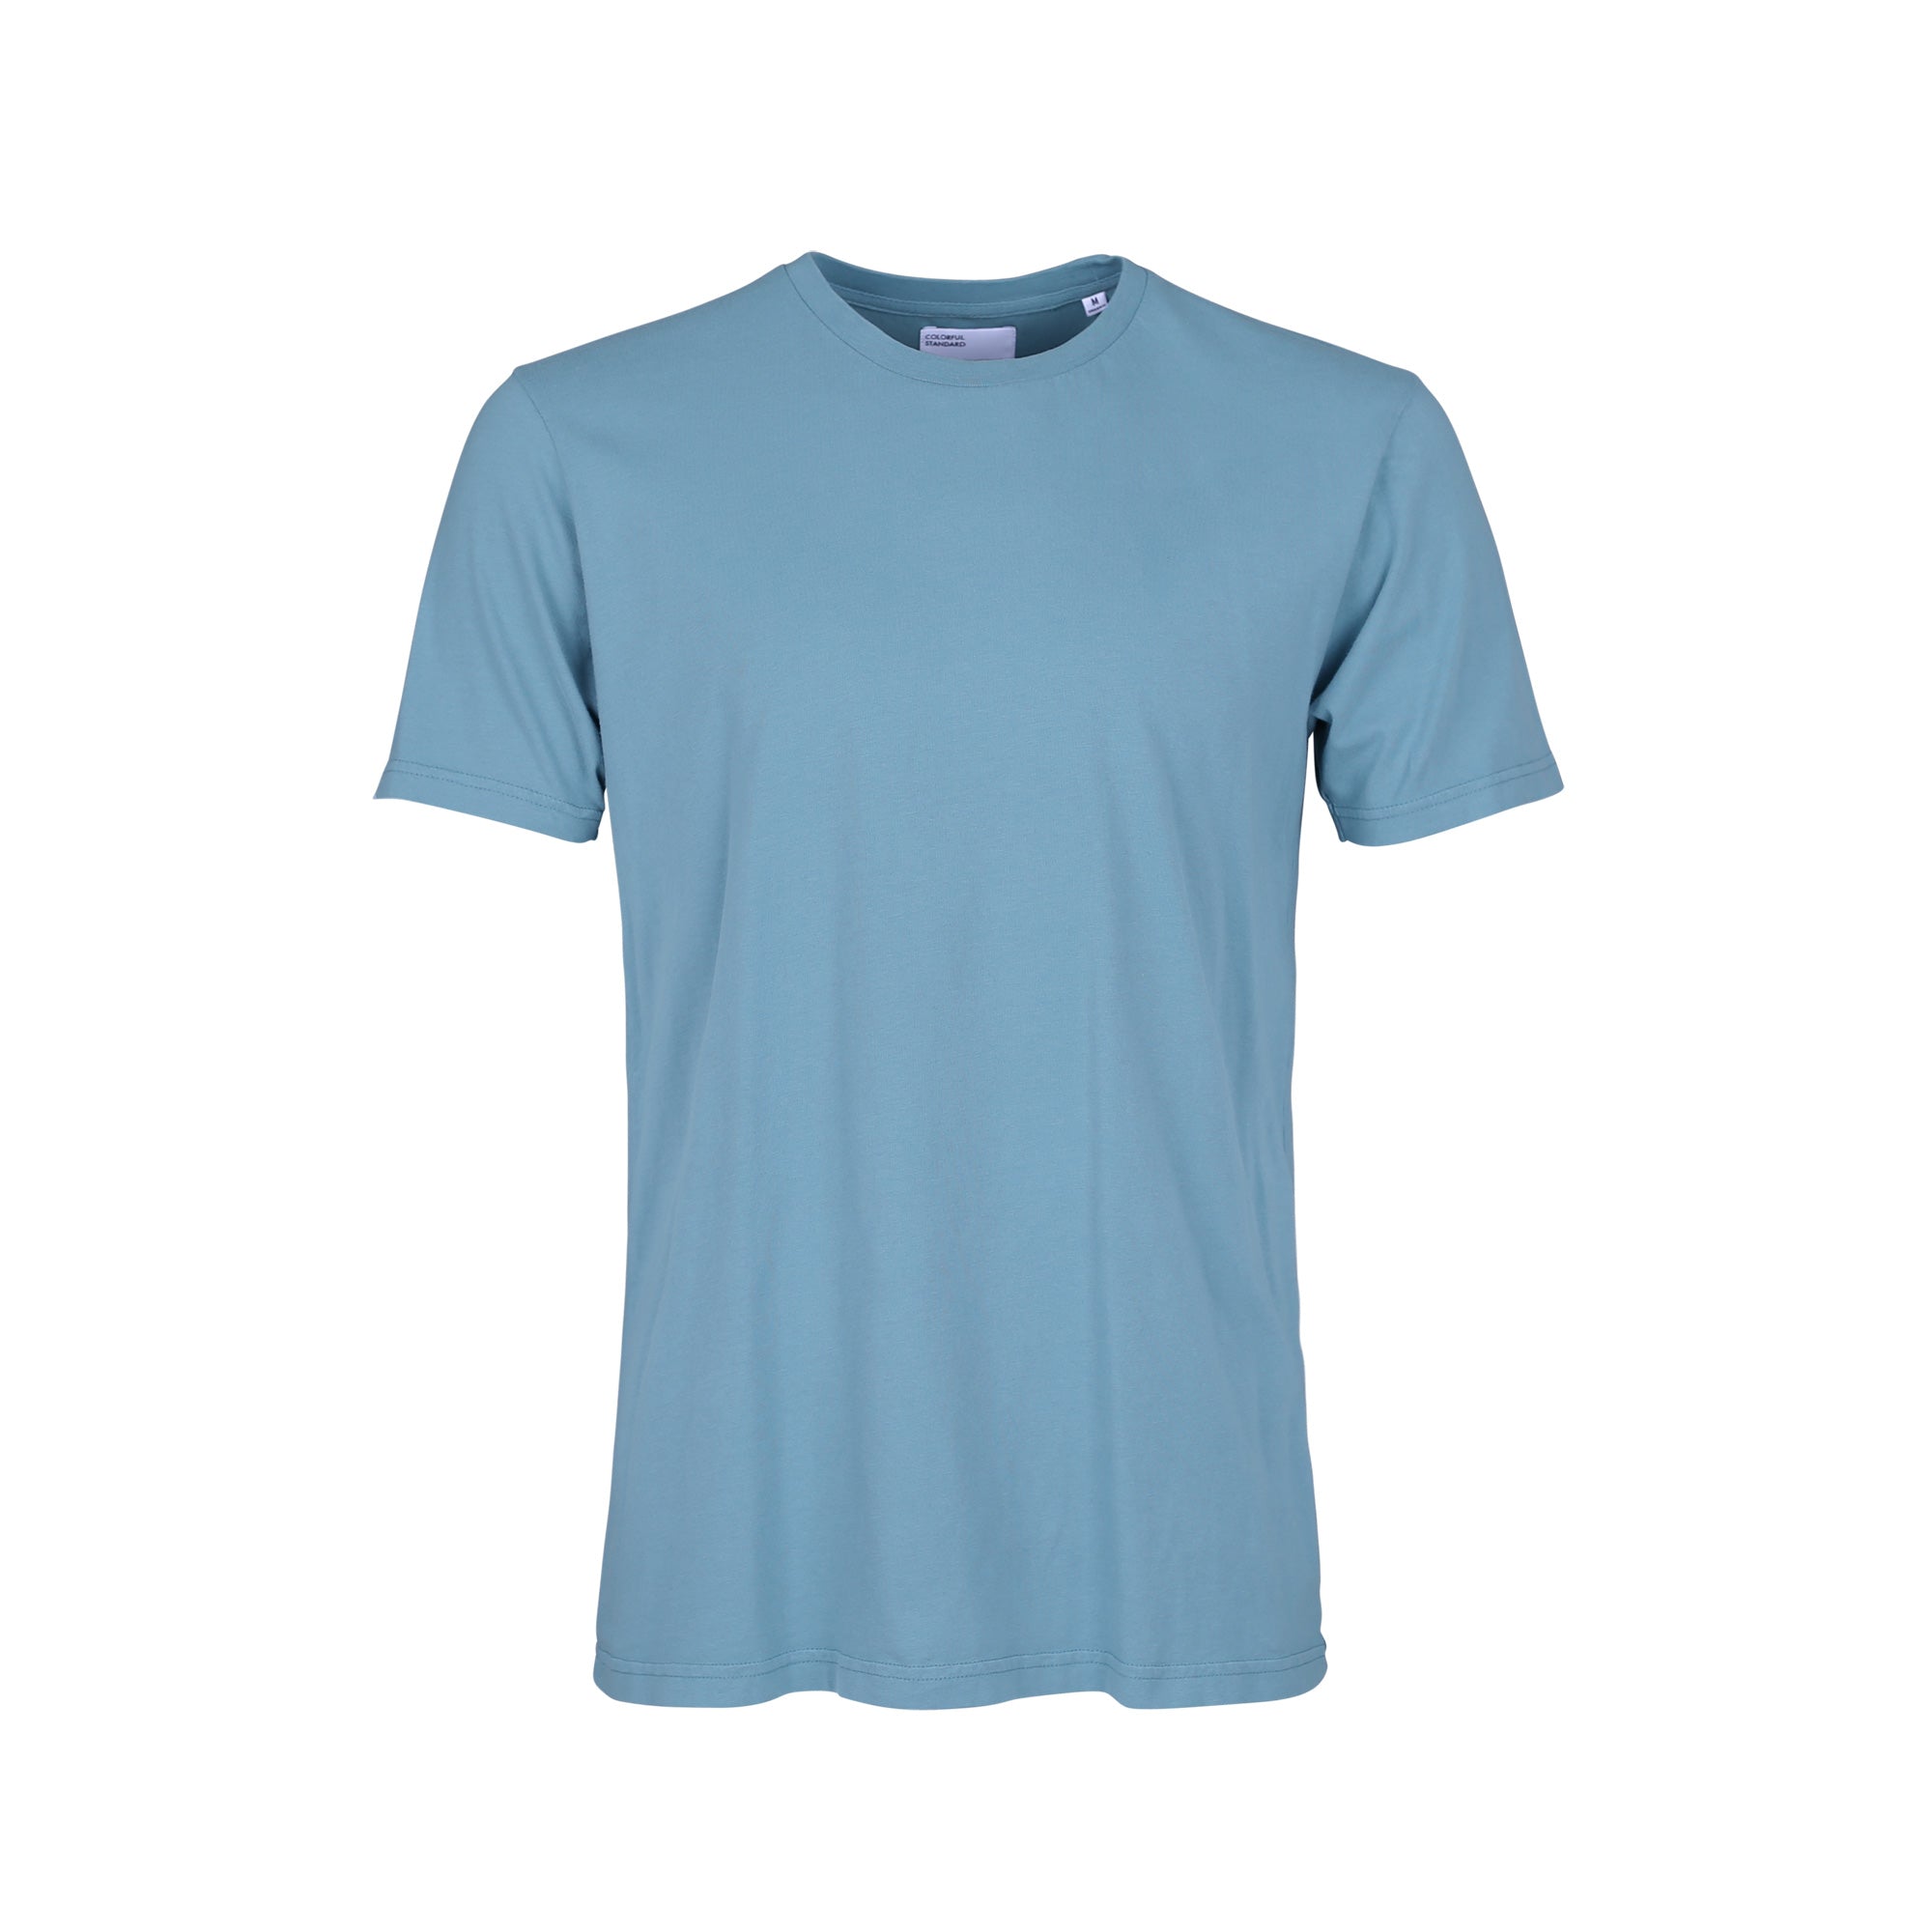 Colorful Tee-Shirt classique org couleur stone blue